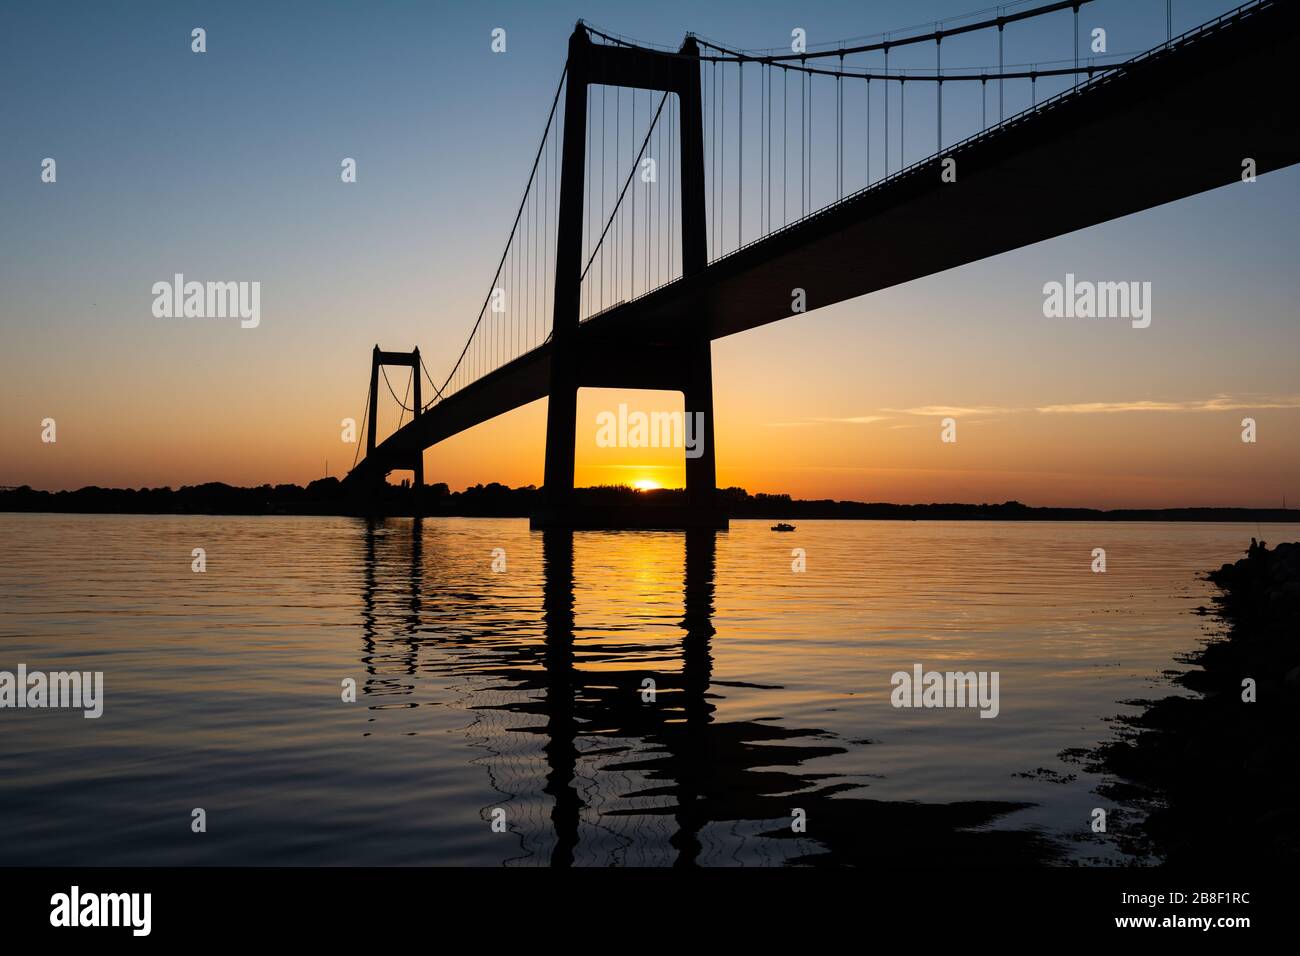 New Little Belt Bridge in Middelfart, Denmark Stock Photo - Alamy